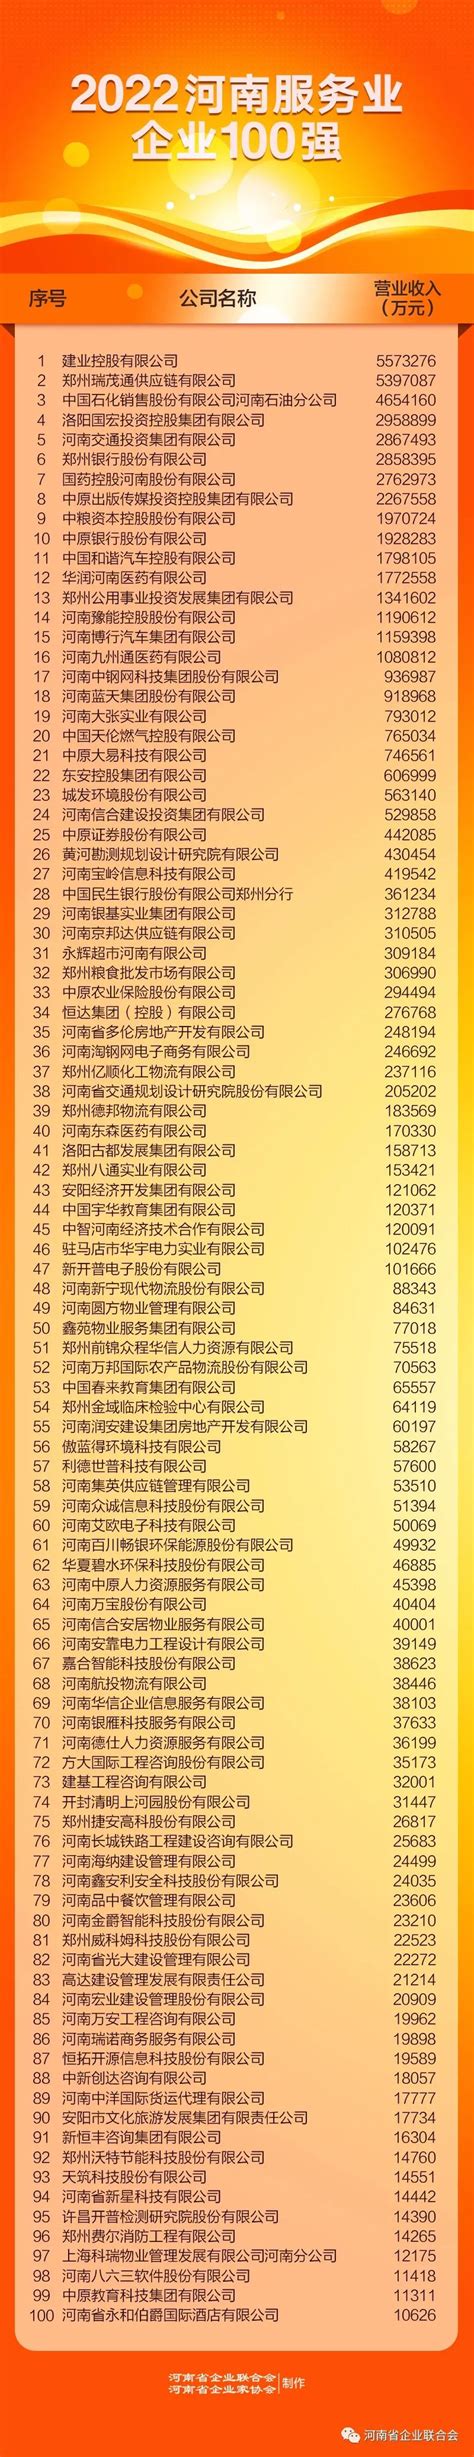 2022河南企业100强榜单发布-中华网河南